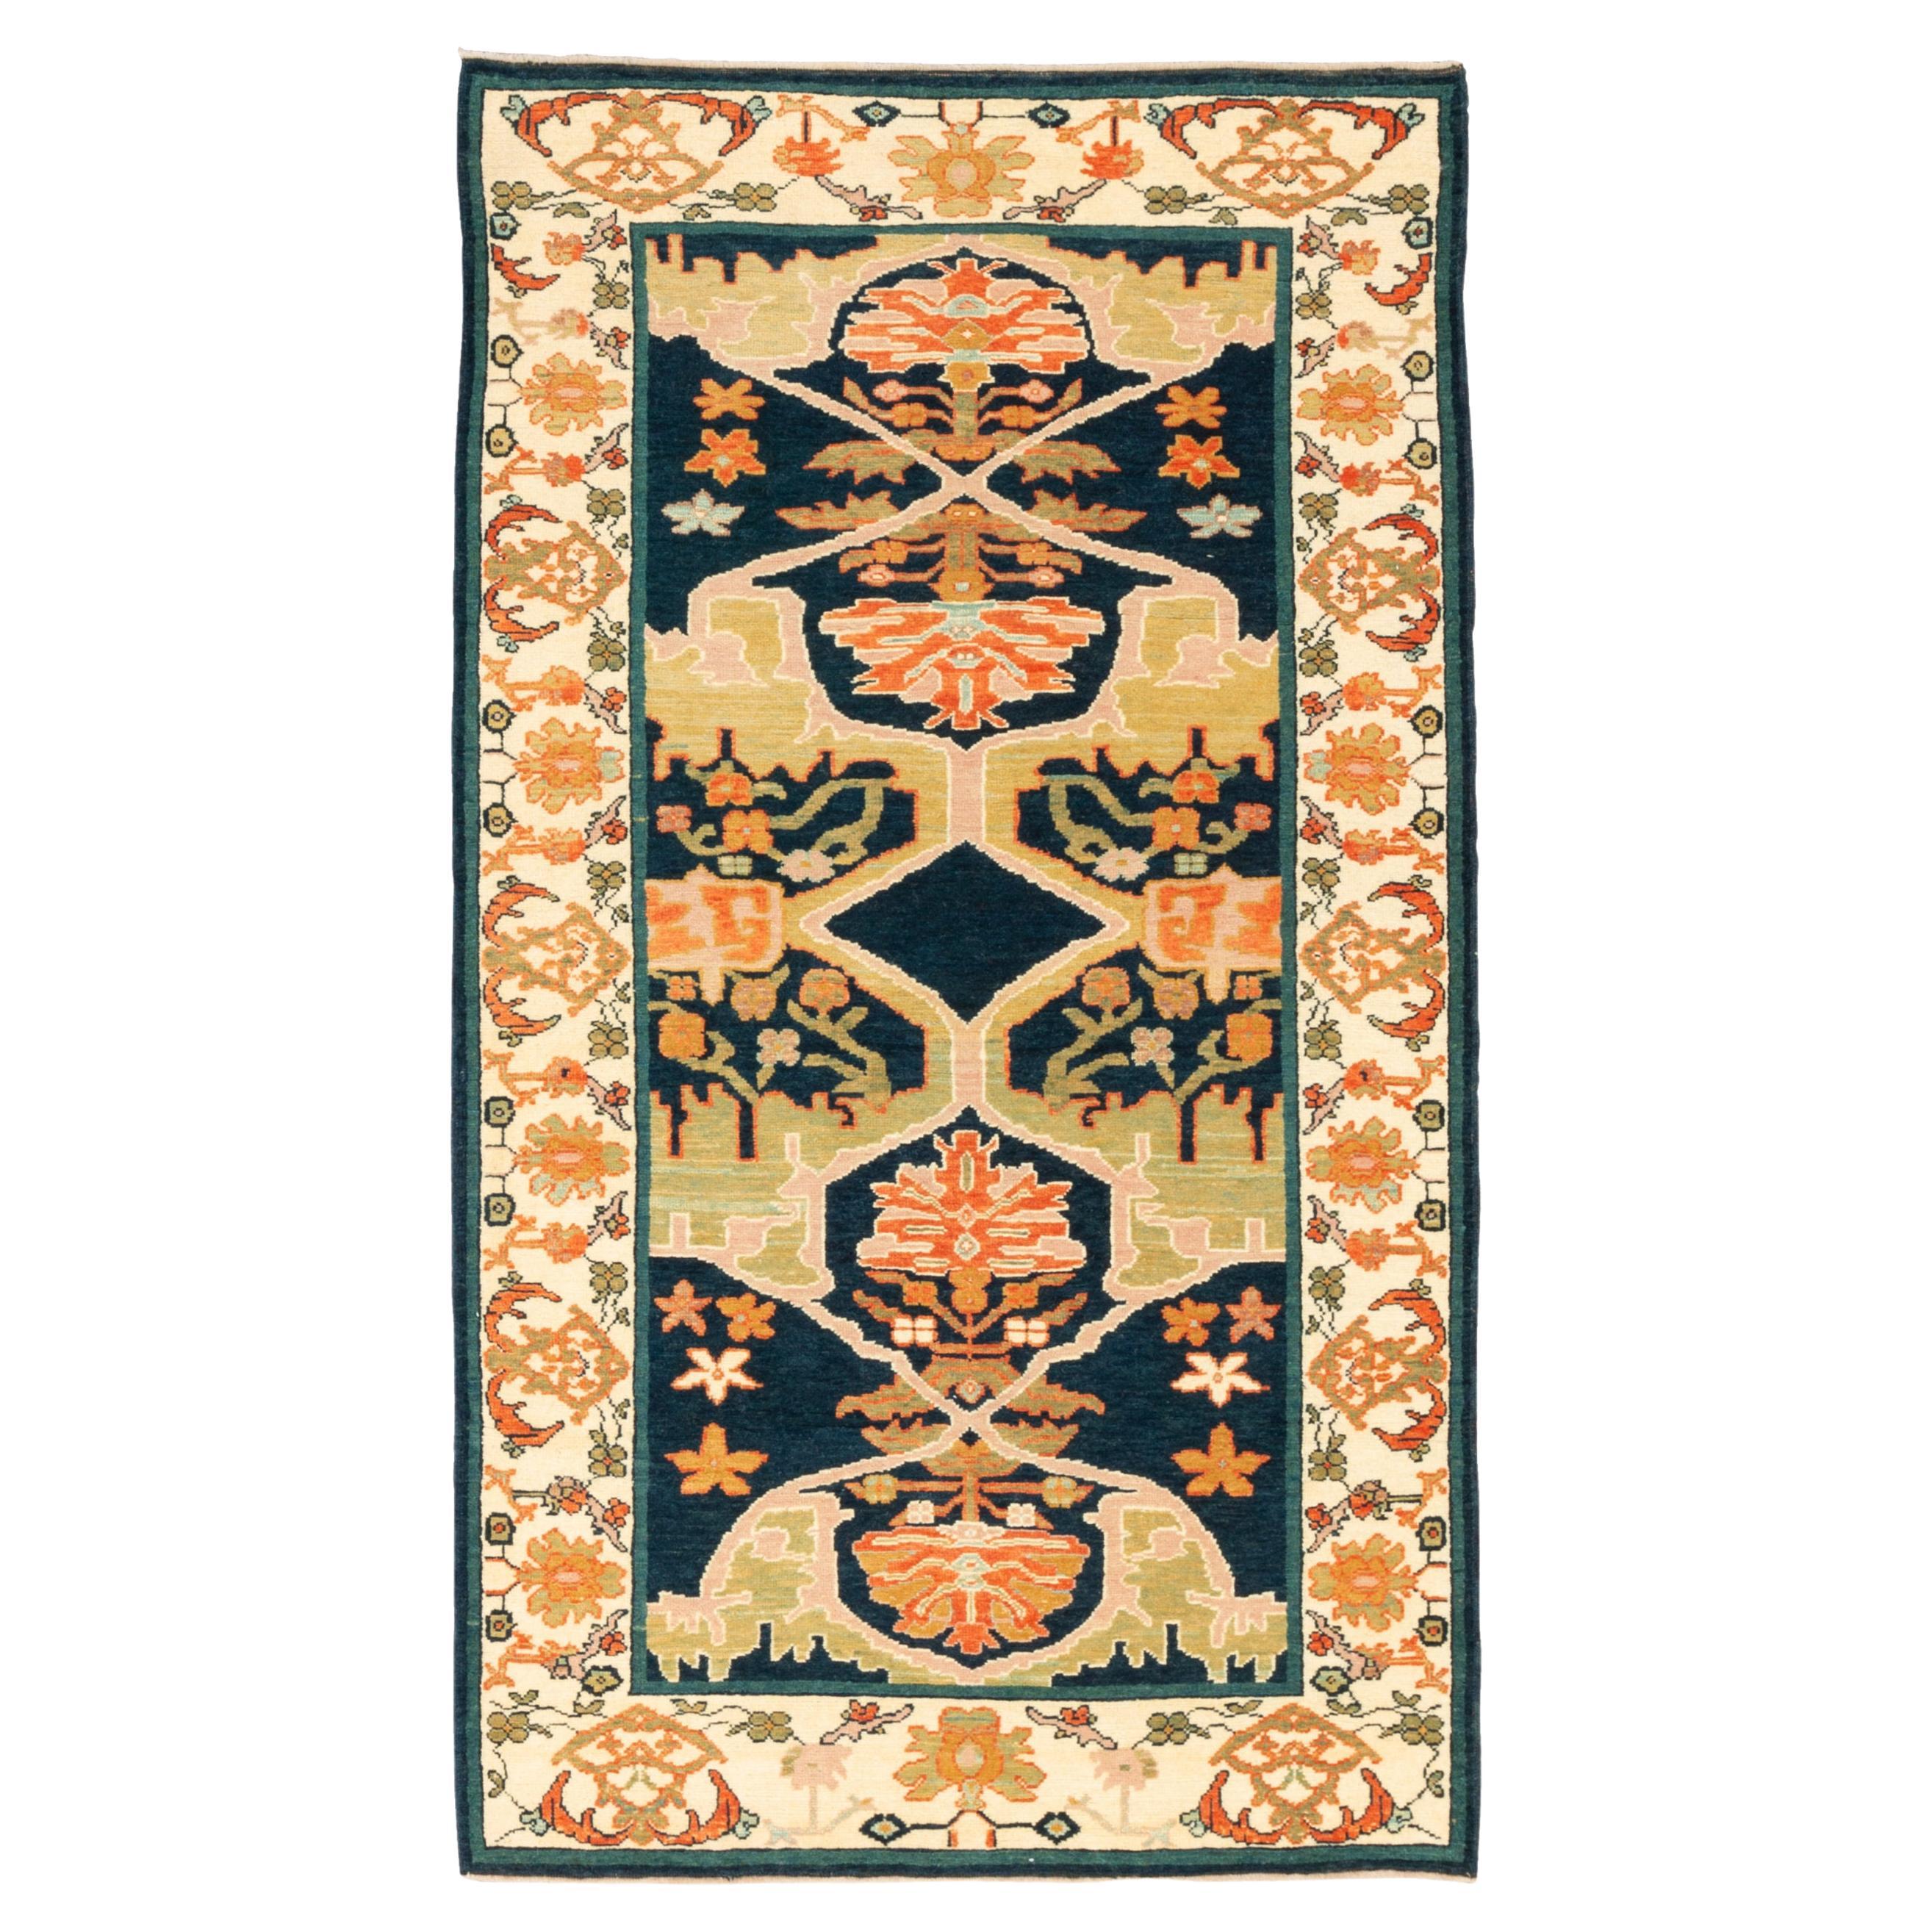 Ararat Teppiche Gerous Bidjar Wagireh Teppich Antikes persisches Design Teppich Naturfarben